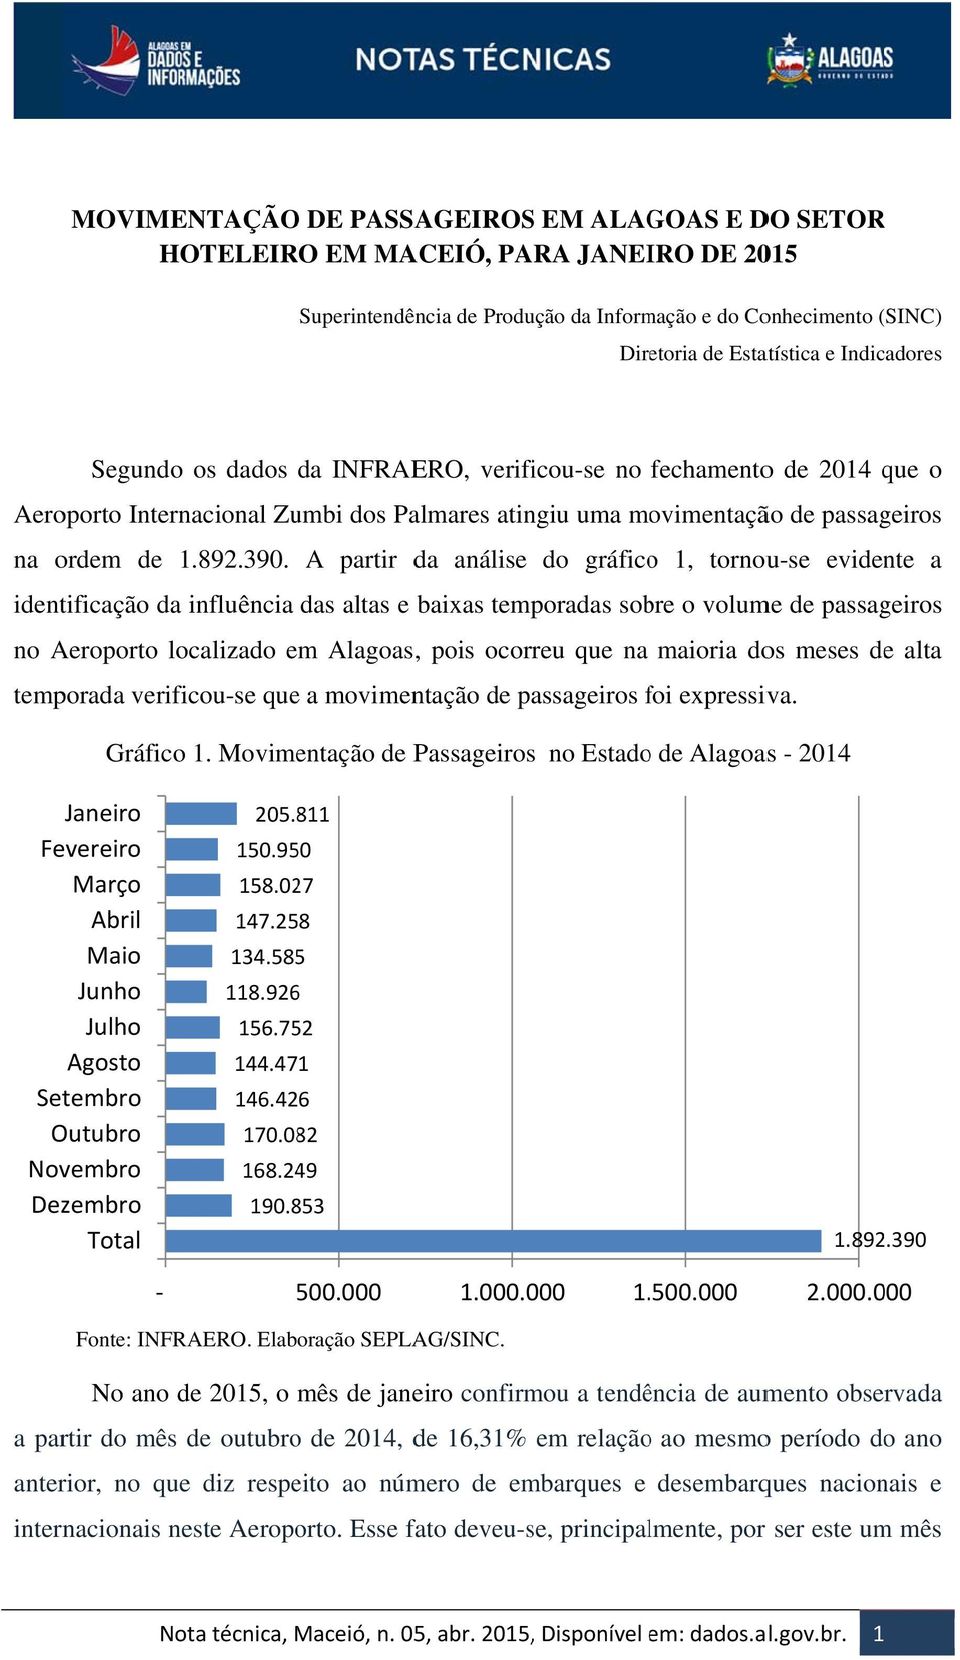 A partir da análise do gráficoo 1, tornou-se evidente a identificação da influência das altas e baixas temporadas sobre o volume de passageiros no Aeroporto localizado em Alagoas, pois ocorreu que na